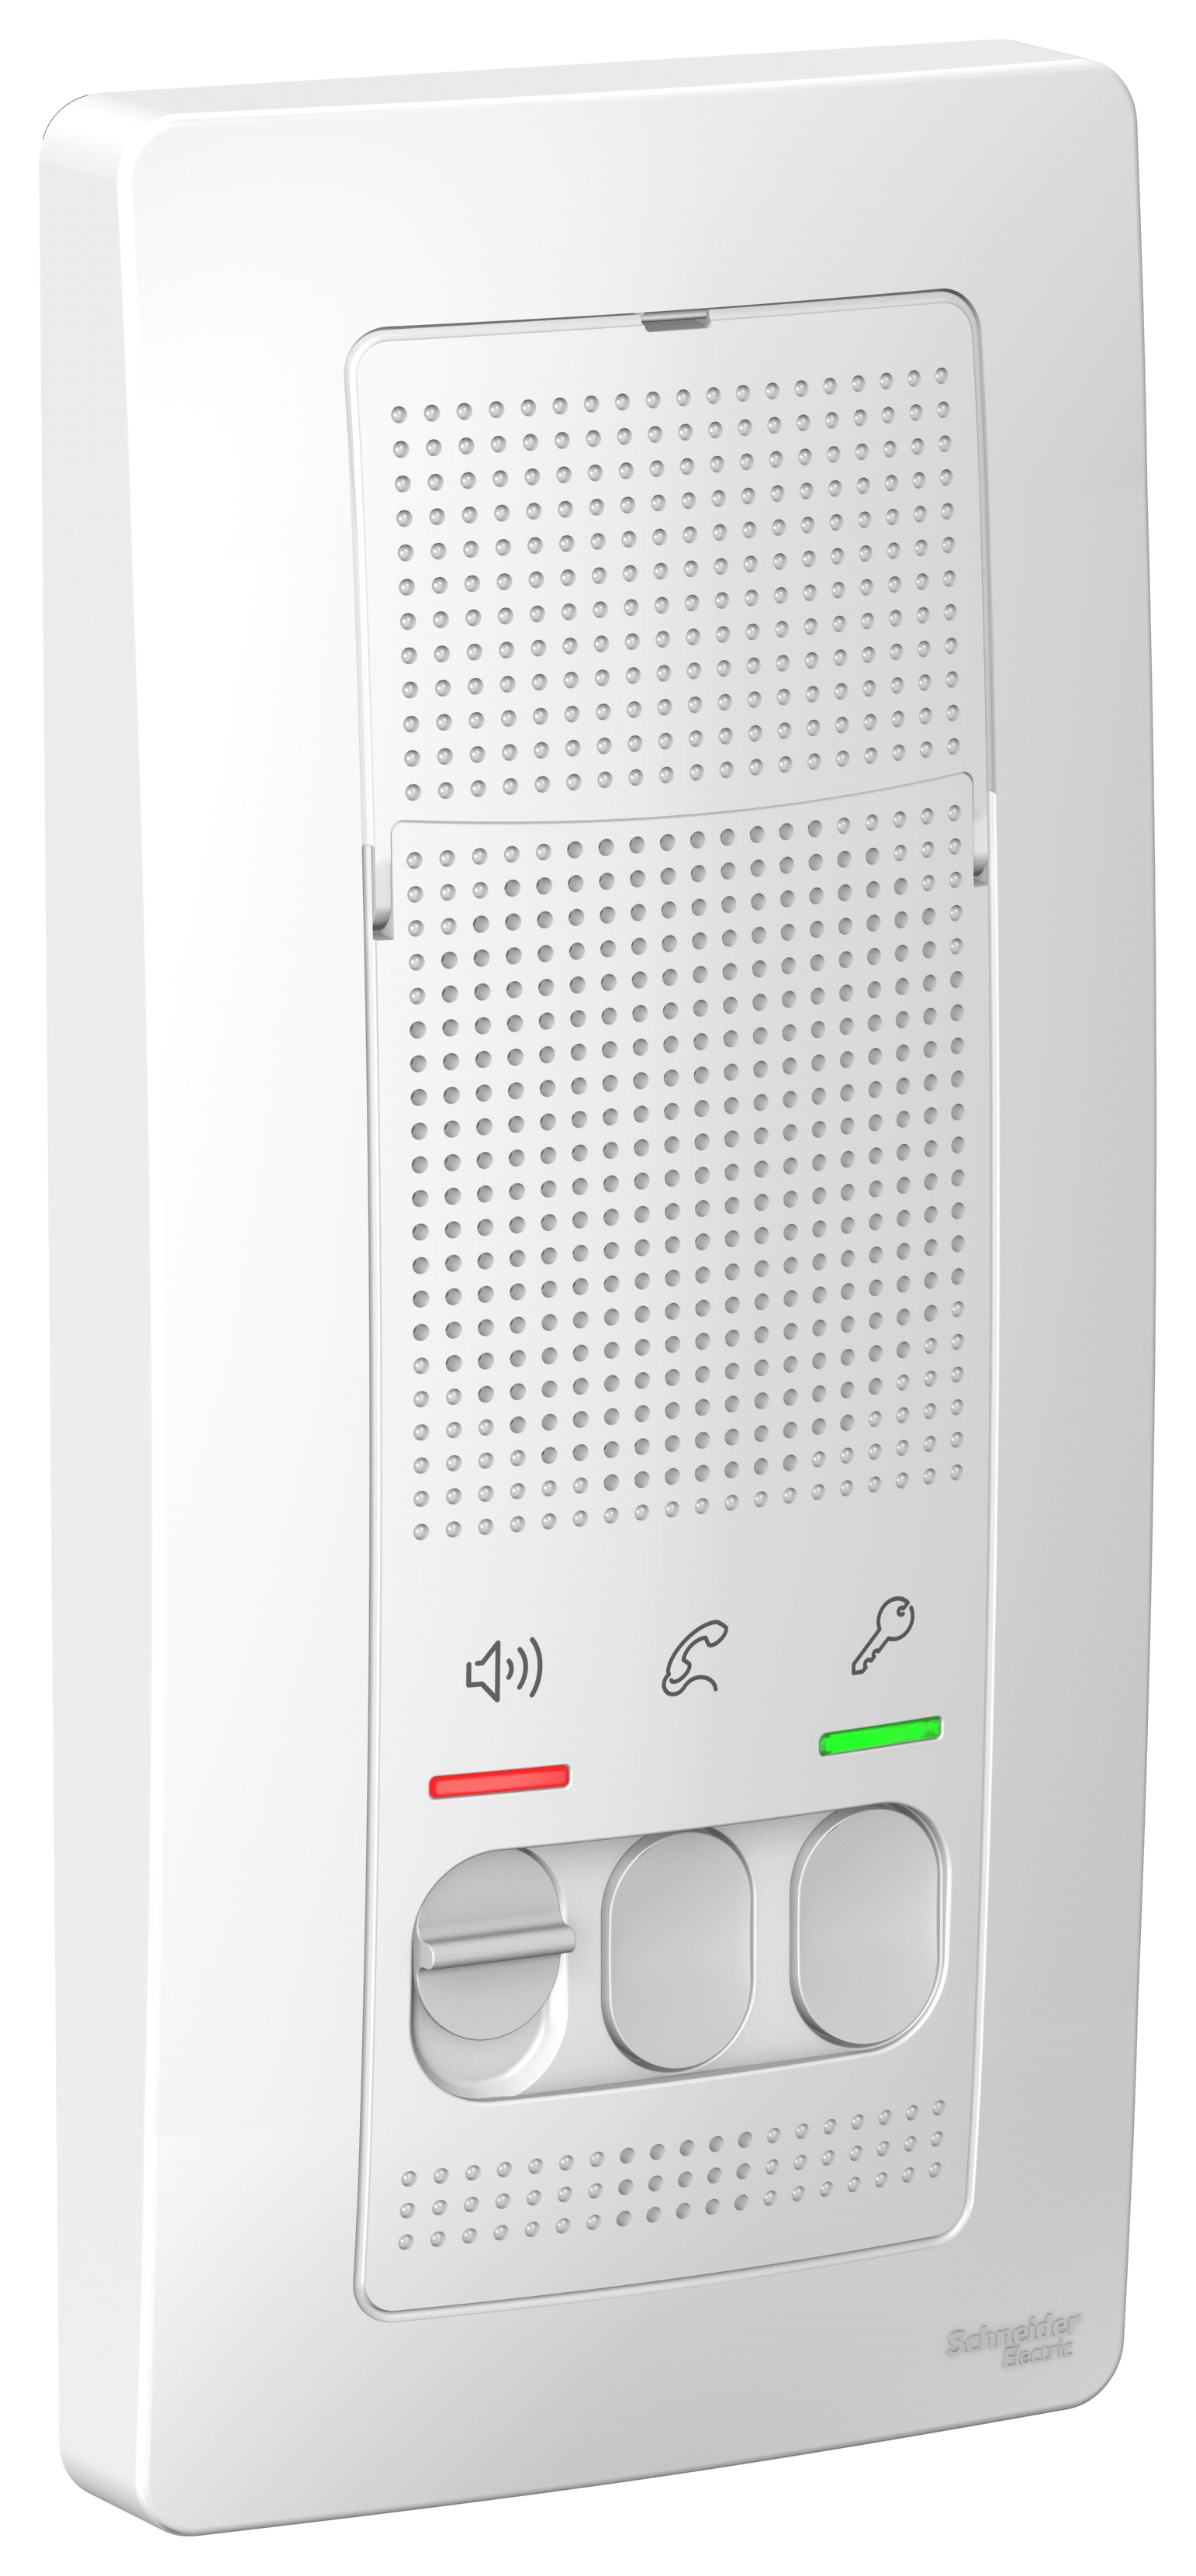 Аудиотрубки Schneider Electric BLANCA переговорное устройство (домофон) 4,5в белый (BLNDA000011) 720 BLANCA переговорное устройство (домофон) 4,5в белый (BLNDA000011) - фото 1